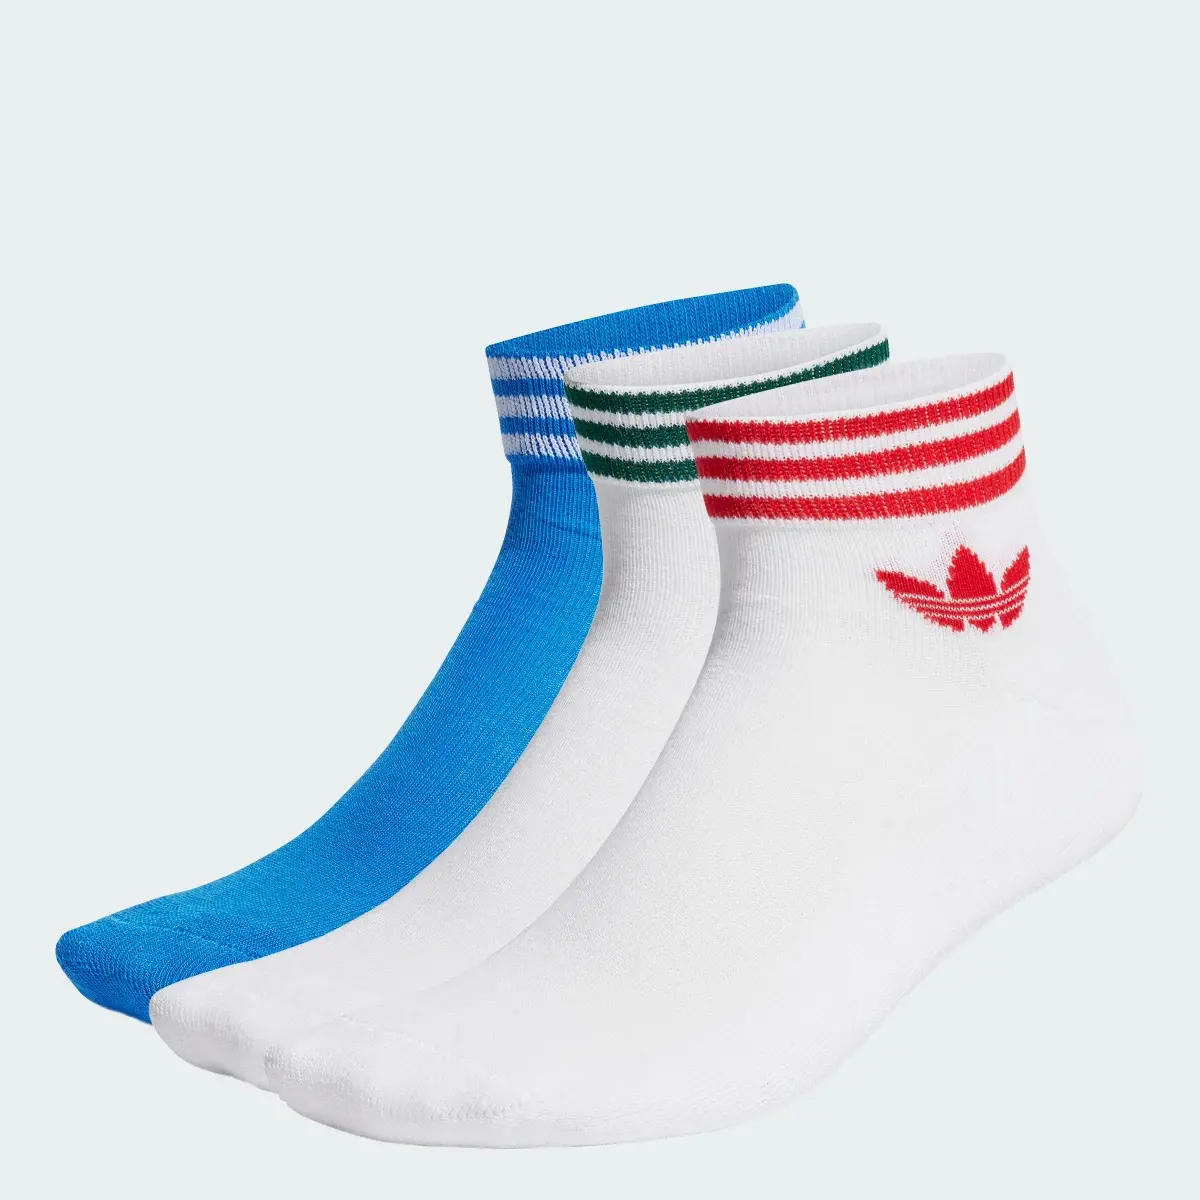 Adidas Island Club Trefoil Ankle Socks 3 Pairs. 1